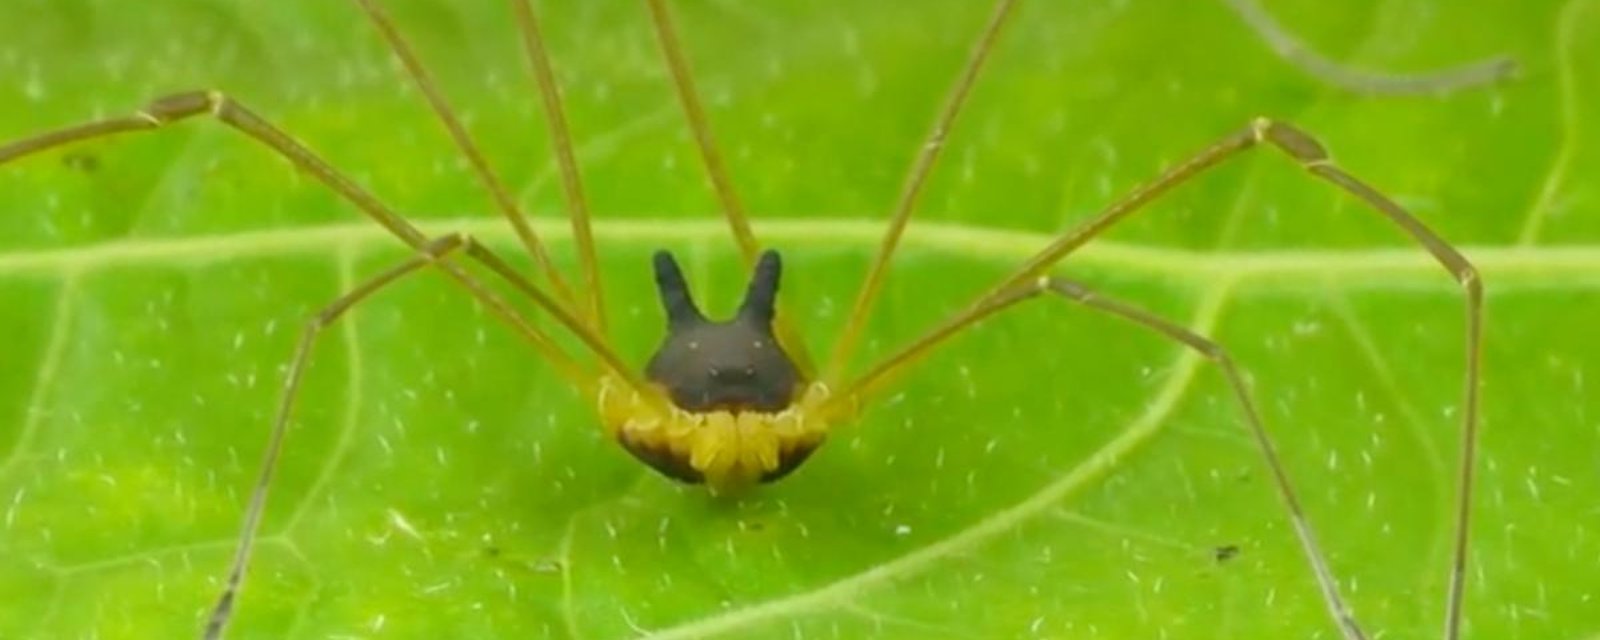 Un chercheur a photographié une araignée qui a une tête de lapin